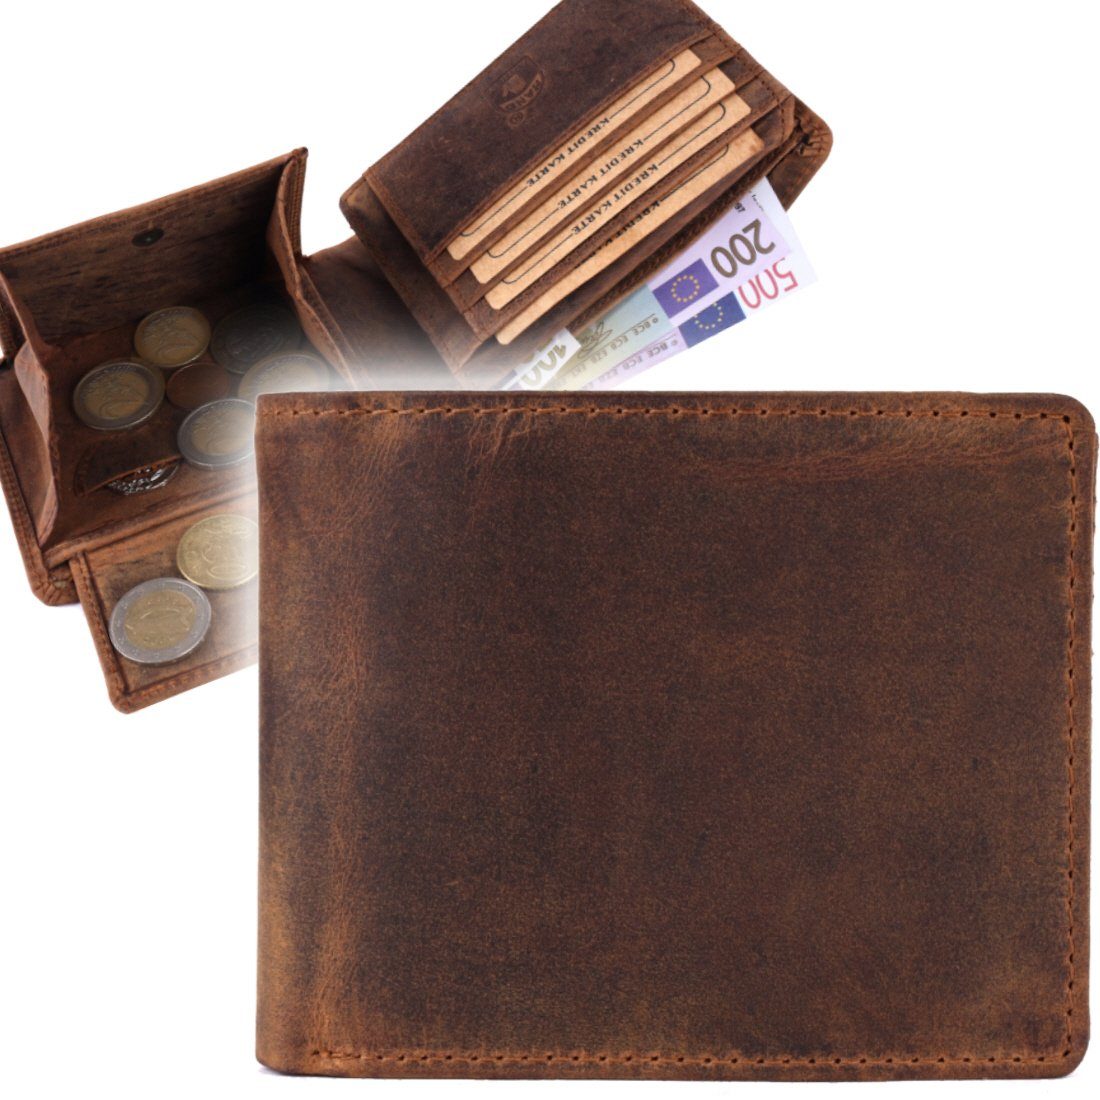 Herren Geldbörse Büffelleder Portemonnaie, RFID Lederbörse Börse Männerbörse SHG mit Schutz Leder Münzfach Brieftasche